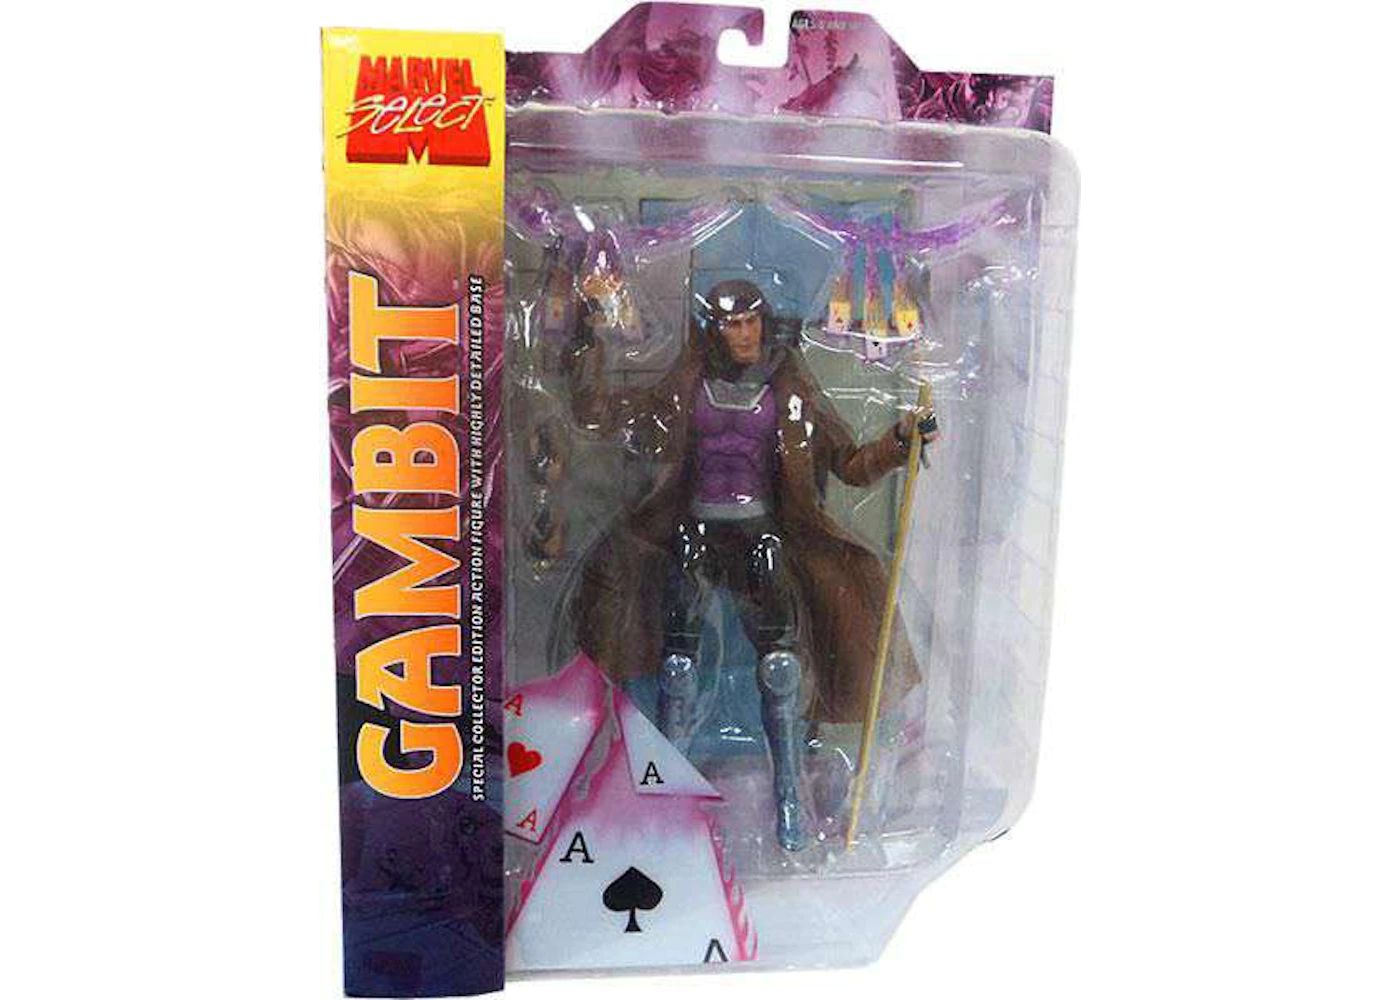 Gambit Action Figure, Diamond Select Gambit